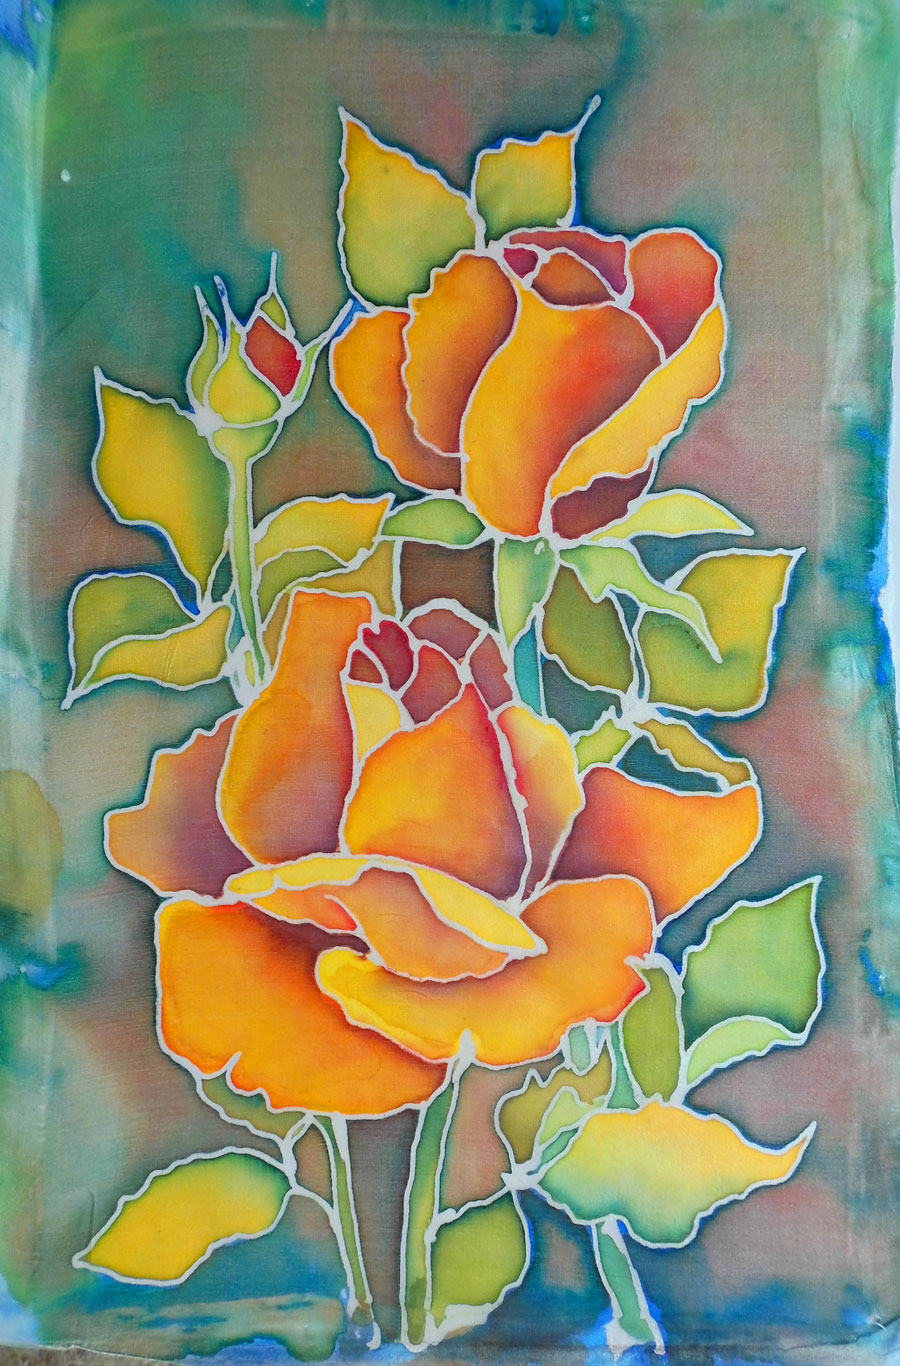 malowanie na jedwabiu kwiaty małgorzata jaskłowska